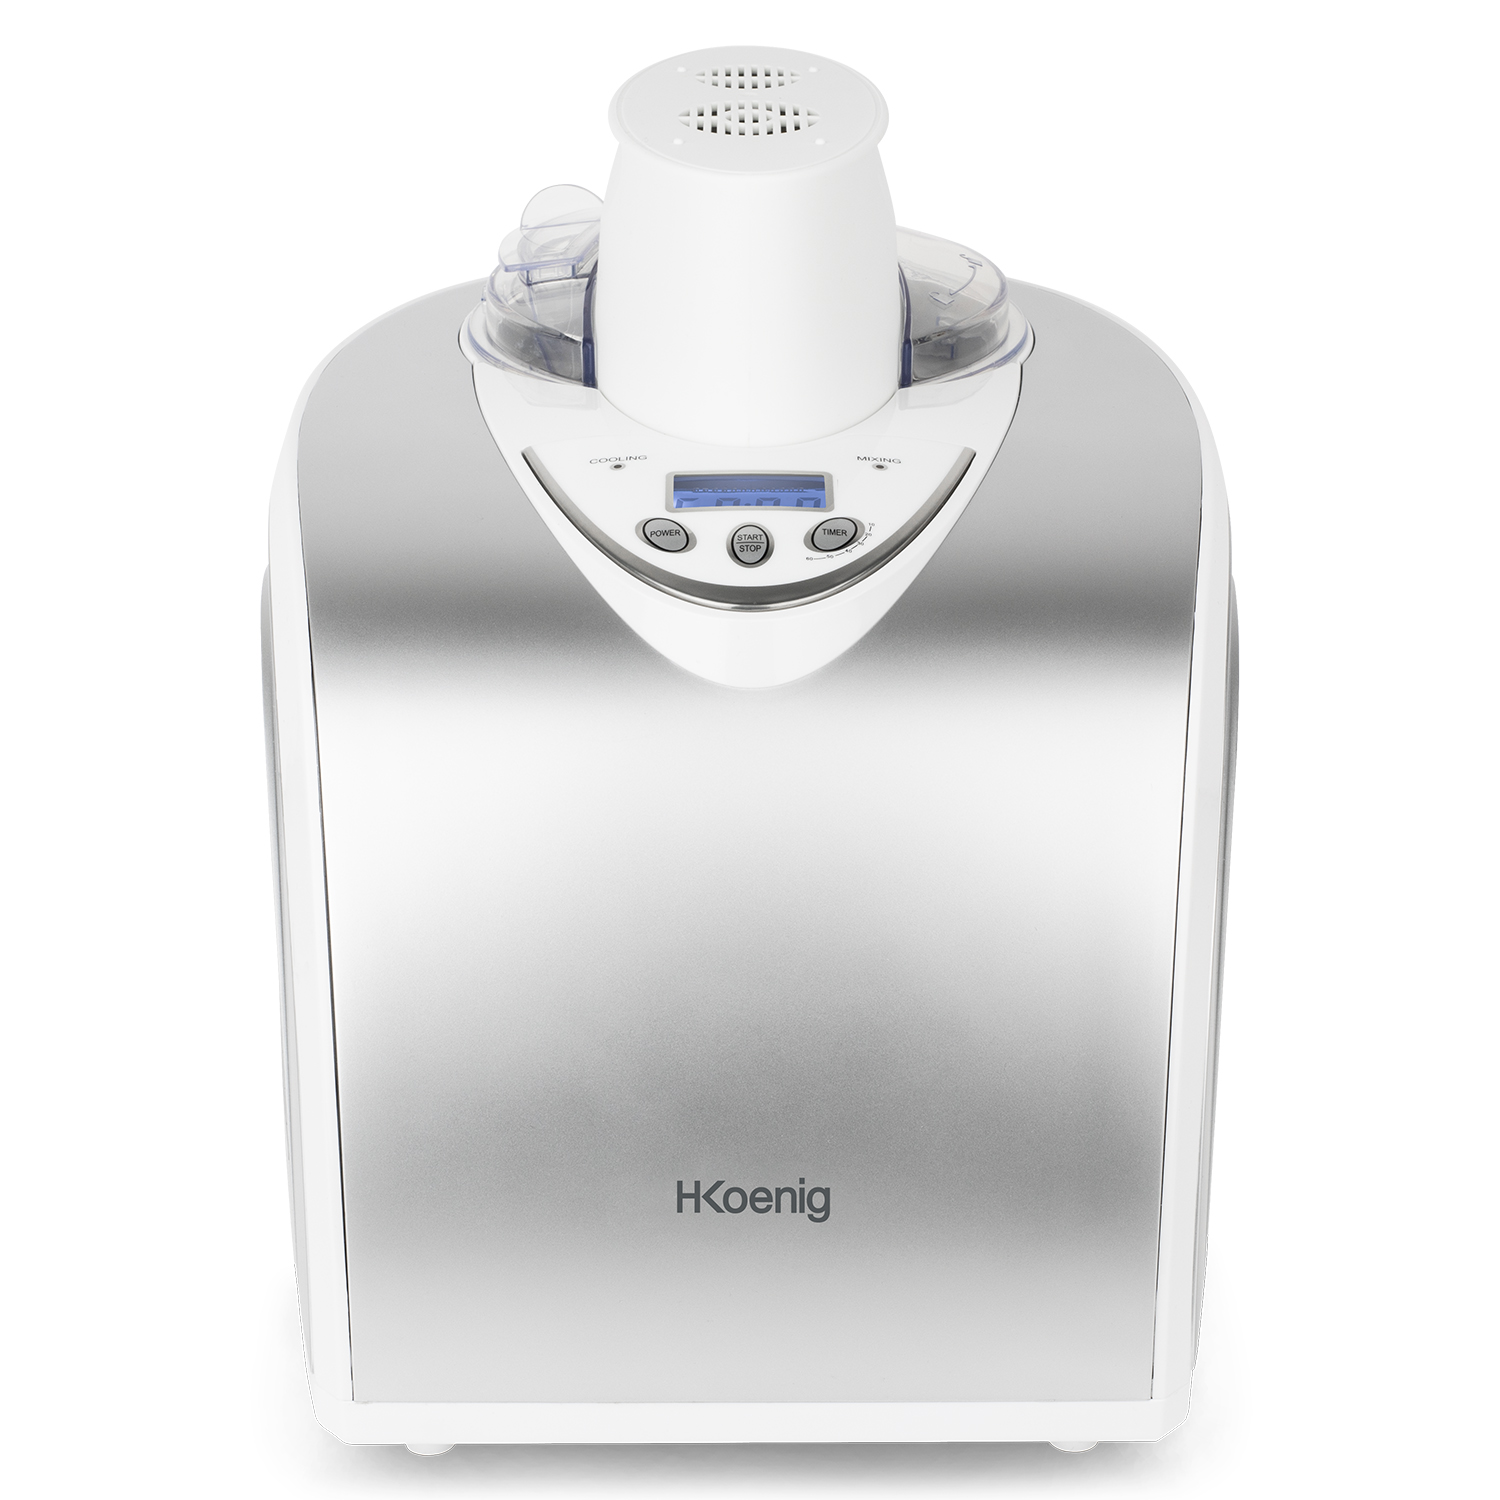 H.KOENIG H.Koenig professionelle Eismaschine Eiscrememaschine / L / HF180 Silber) Kühlfunktion / Eis, 1 W / Joghurt, Sorbet Watt, (135 Frozen 135